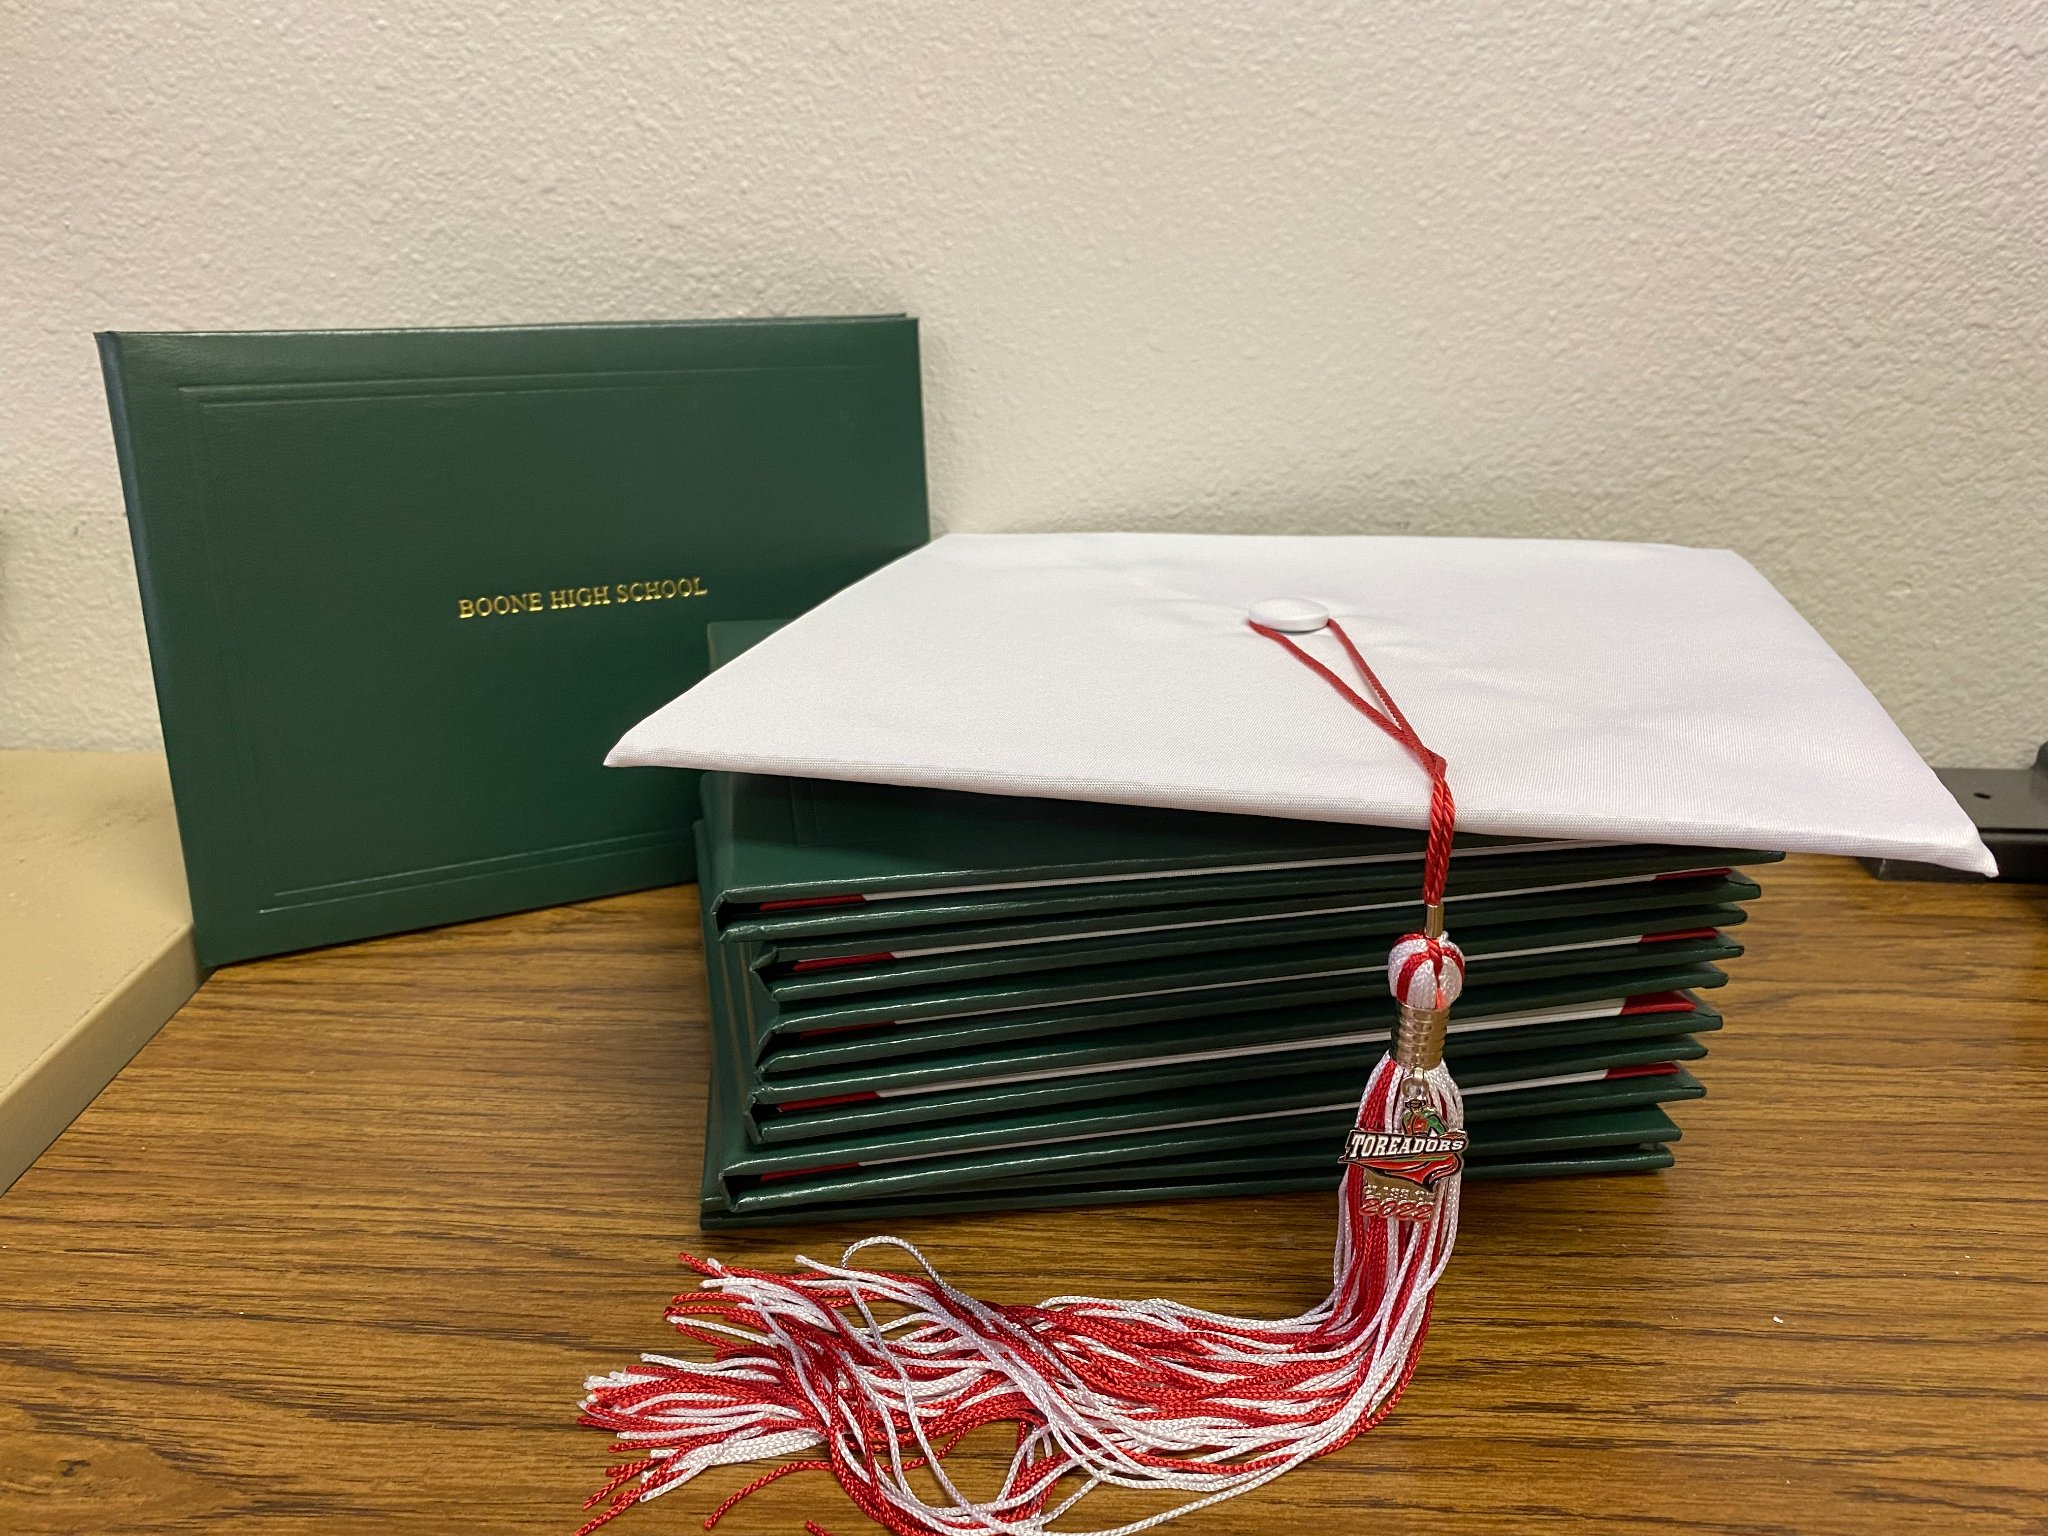 diploma book and graduation cap